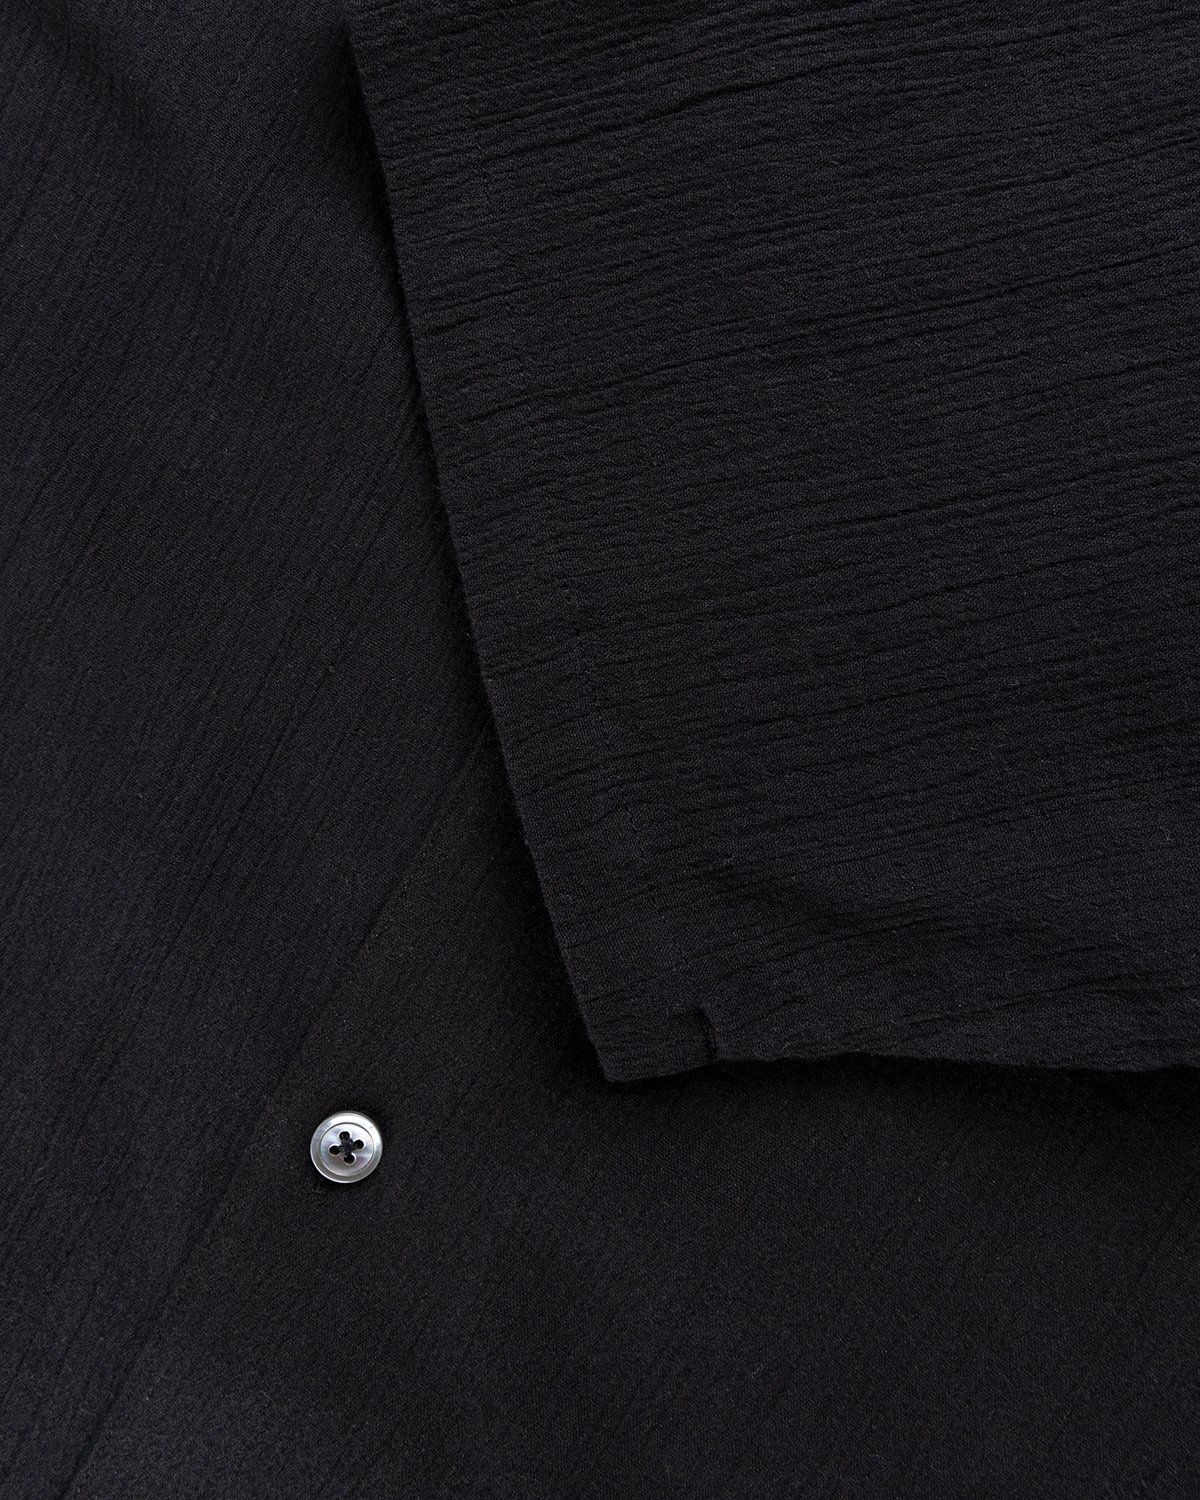 Highsnobiety - Crepe Short Sleeve Shirt Black - Clothing - Black - Image 6